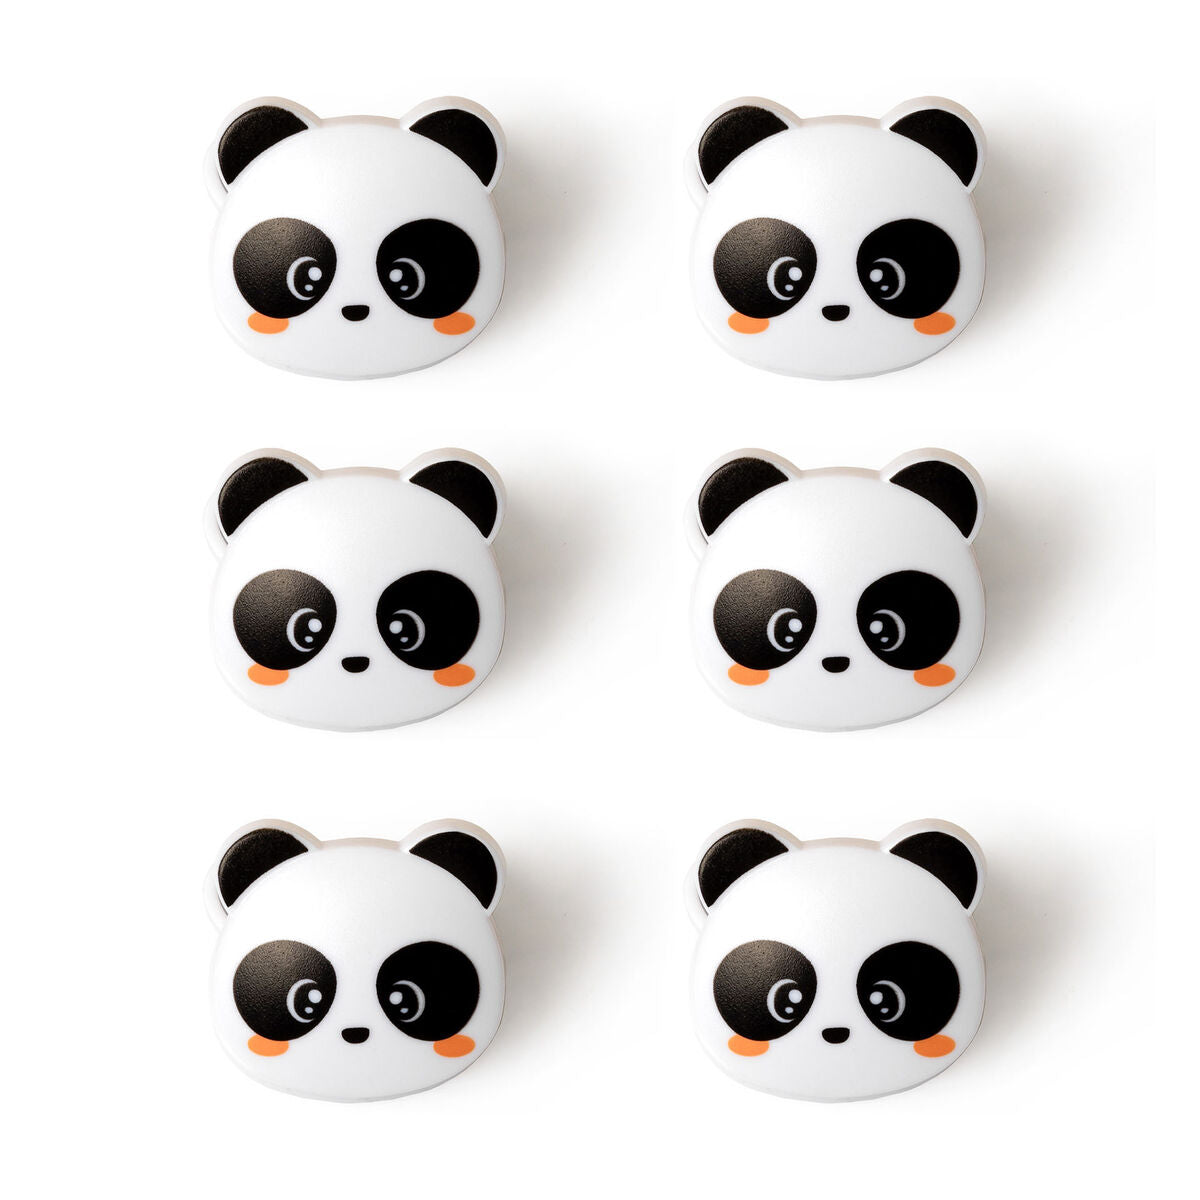 Legami Bag Clips -  Panda - Set 6 Pcs